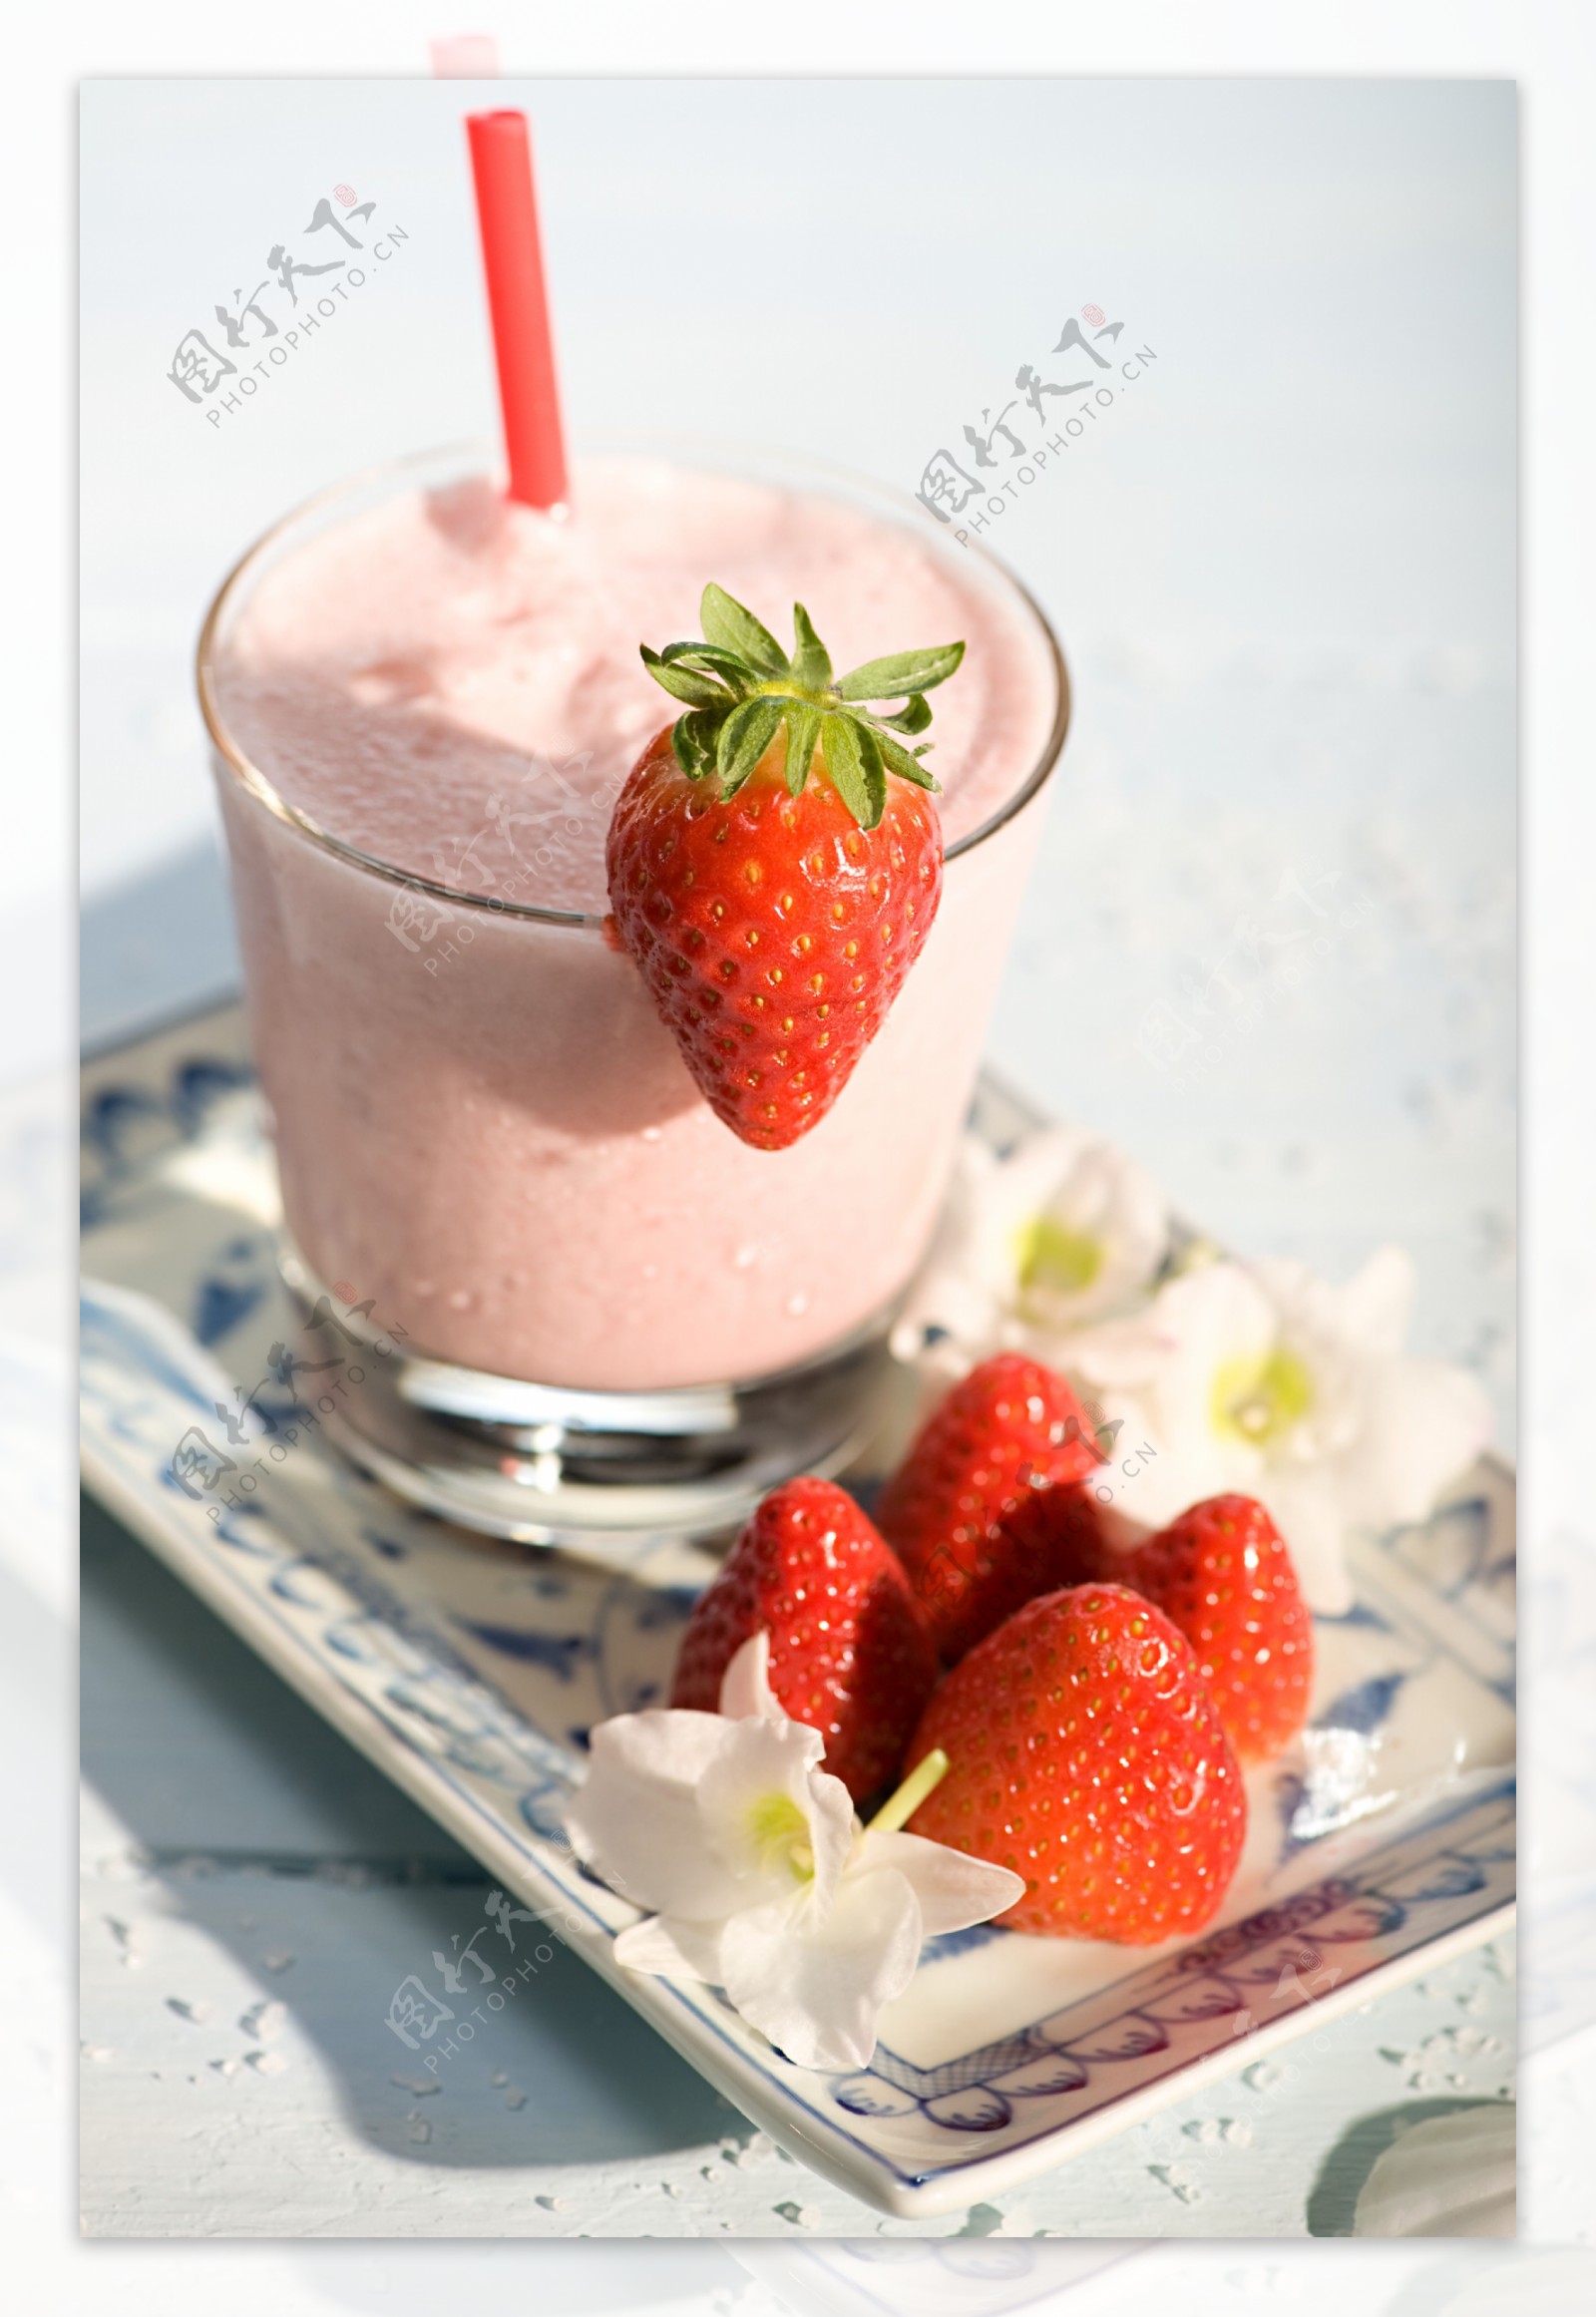 鸡尾酒mocktail 水果的鸡尾酒饮料装饰用冻或新鲜的莓、草莓、迷迭香、冰和苏打 国内co 库存图片 - 图片 包括有 没人, 橙色: 95269473